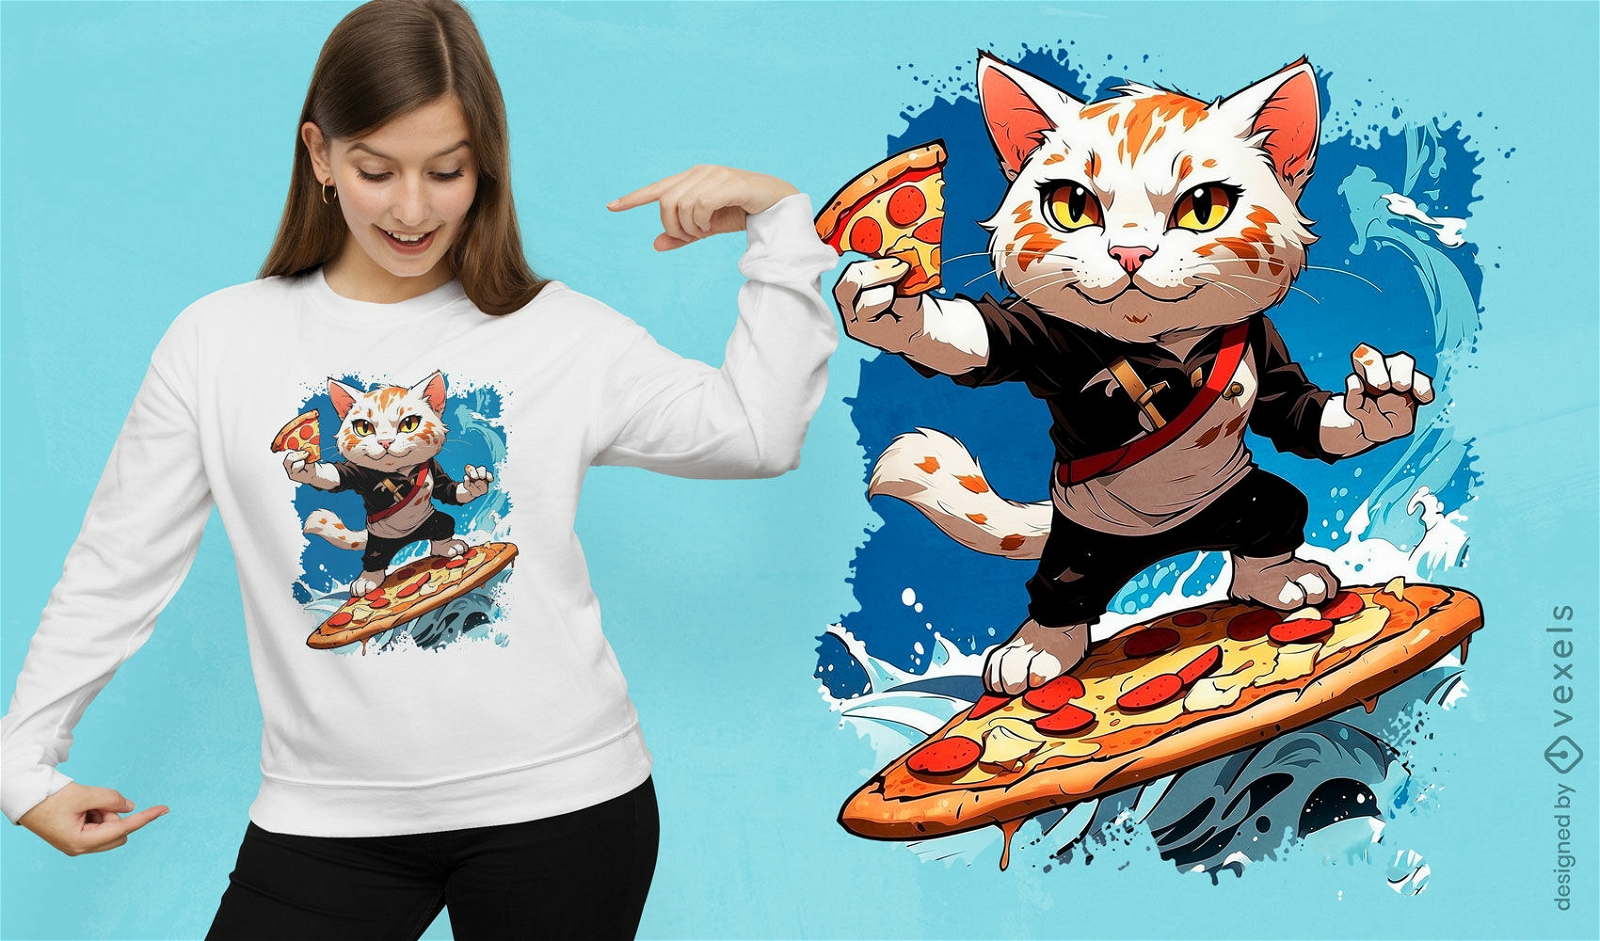 Dise?o de camiseta de fiesta de pizza con gato surfista.